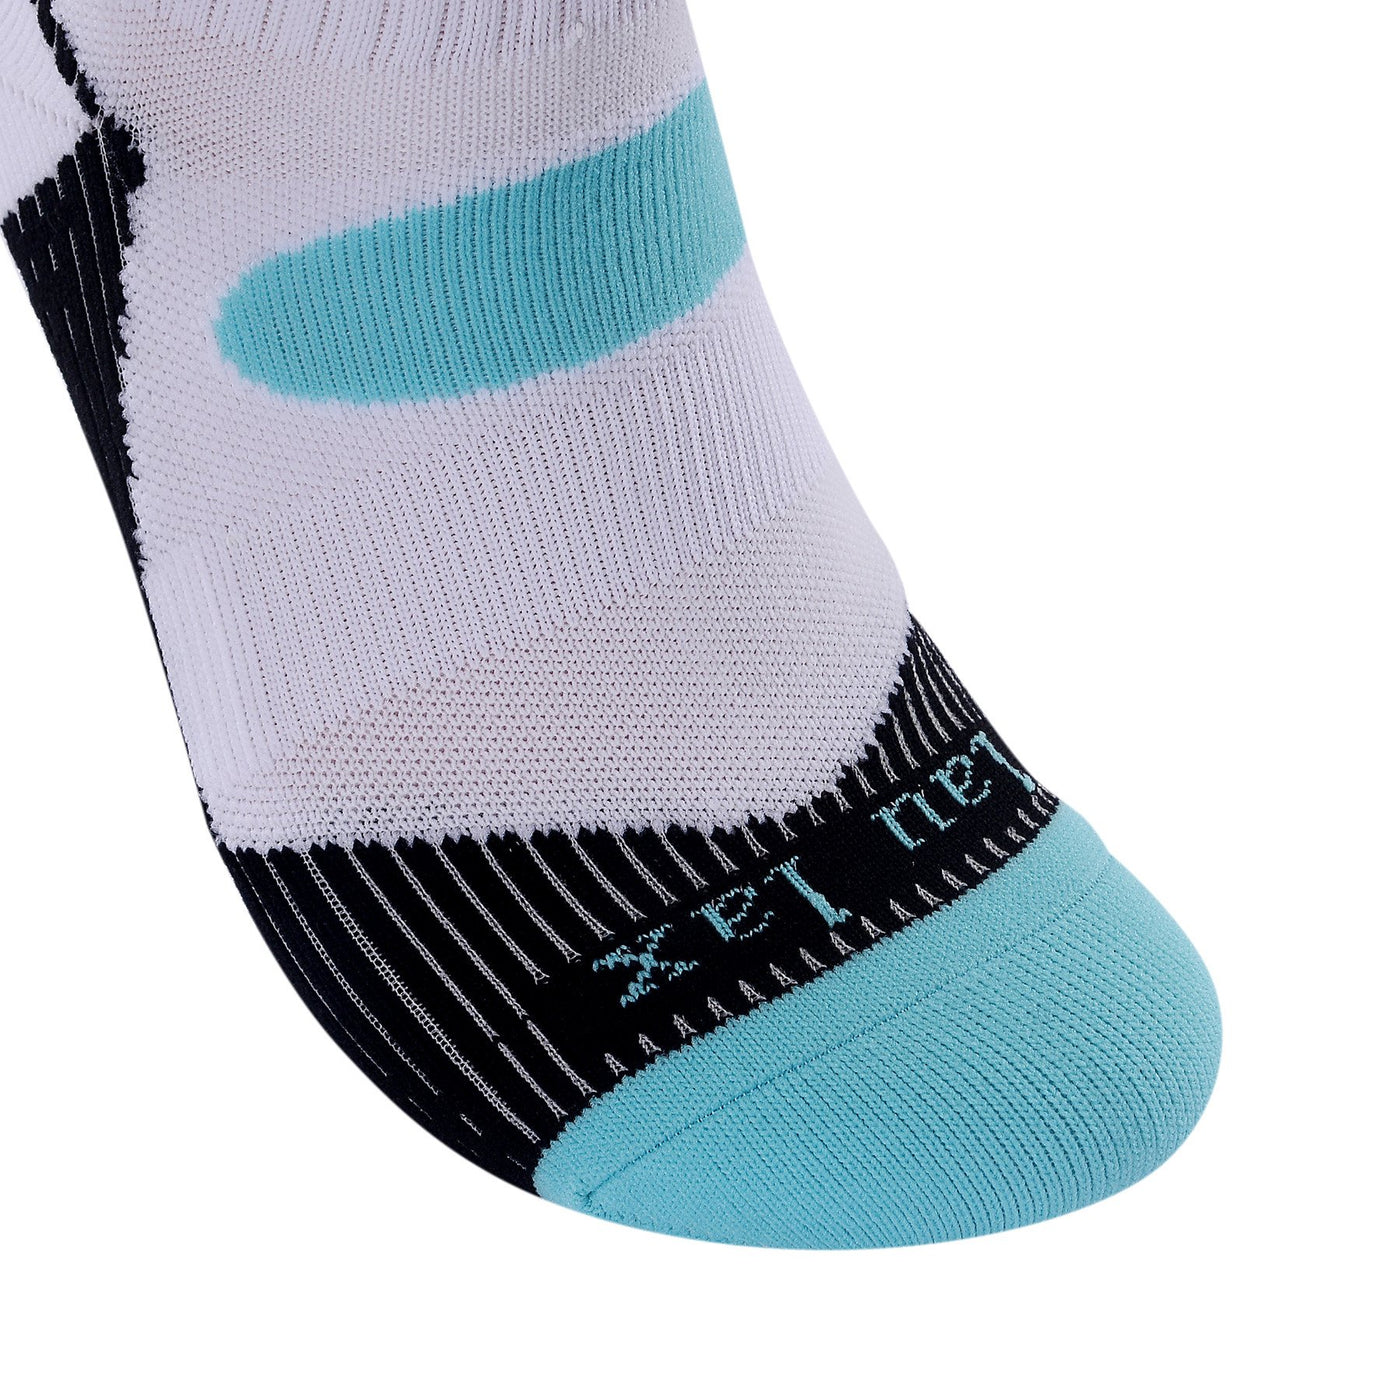 Laulax 4 pares de calcetines profesionales para correr Coolmax para mujer, 2 pares de protección del arco, 2 pares de compresión, talla UK 6 - 8 / Europa 39 - 41, set de regalo